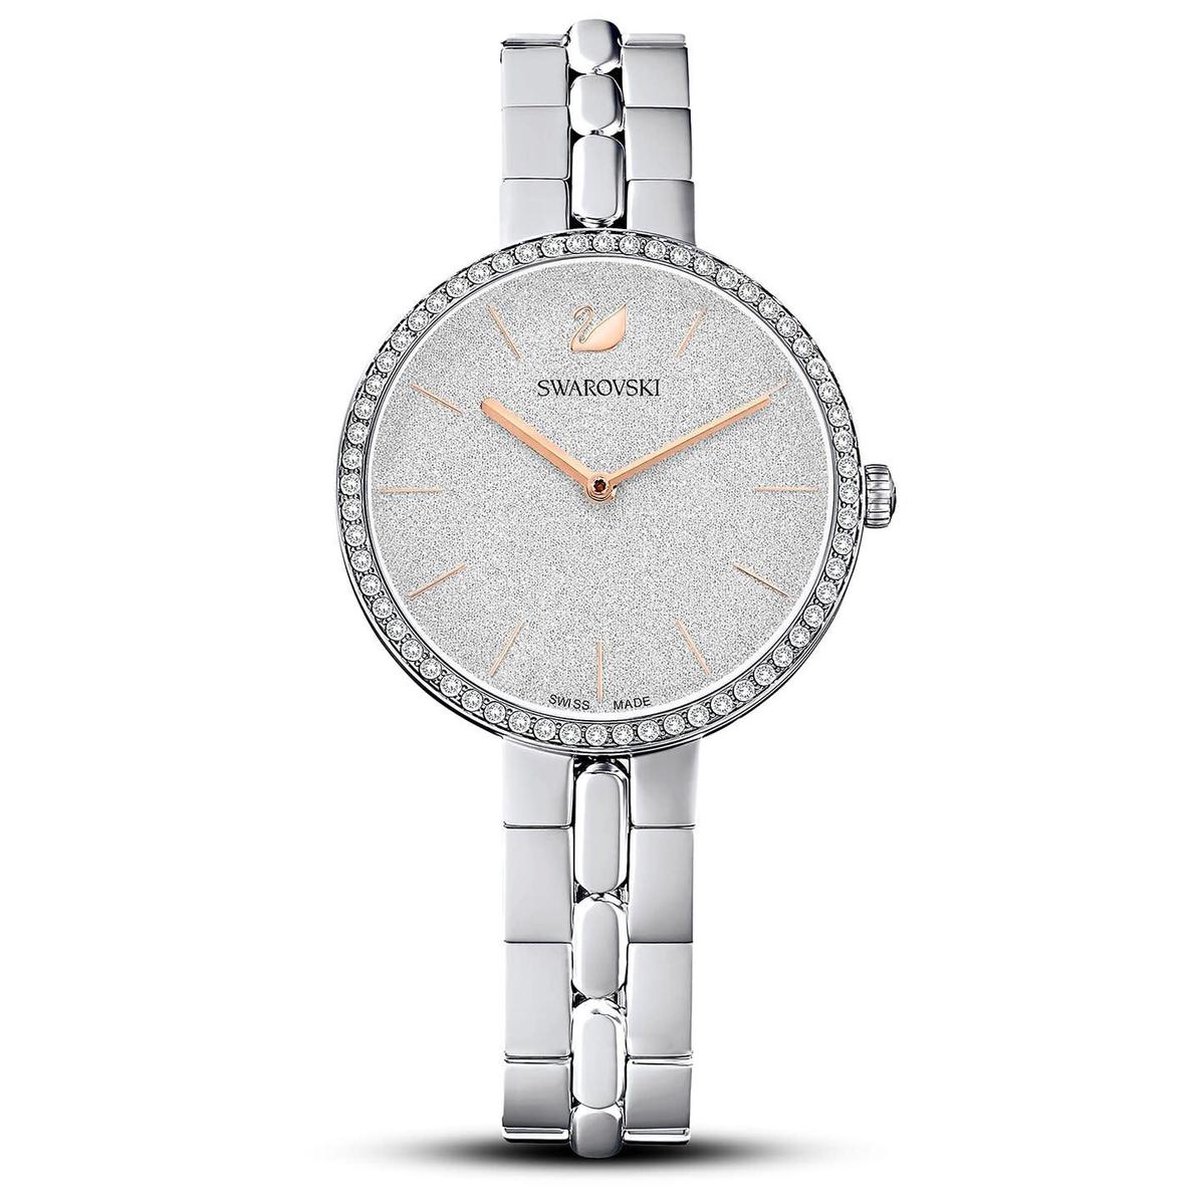 Swarovski horloge Cosmopolitan 5517807